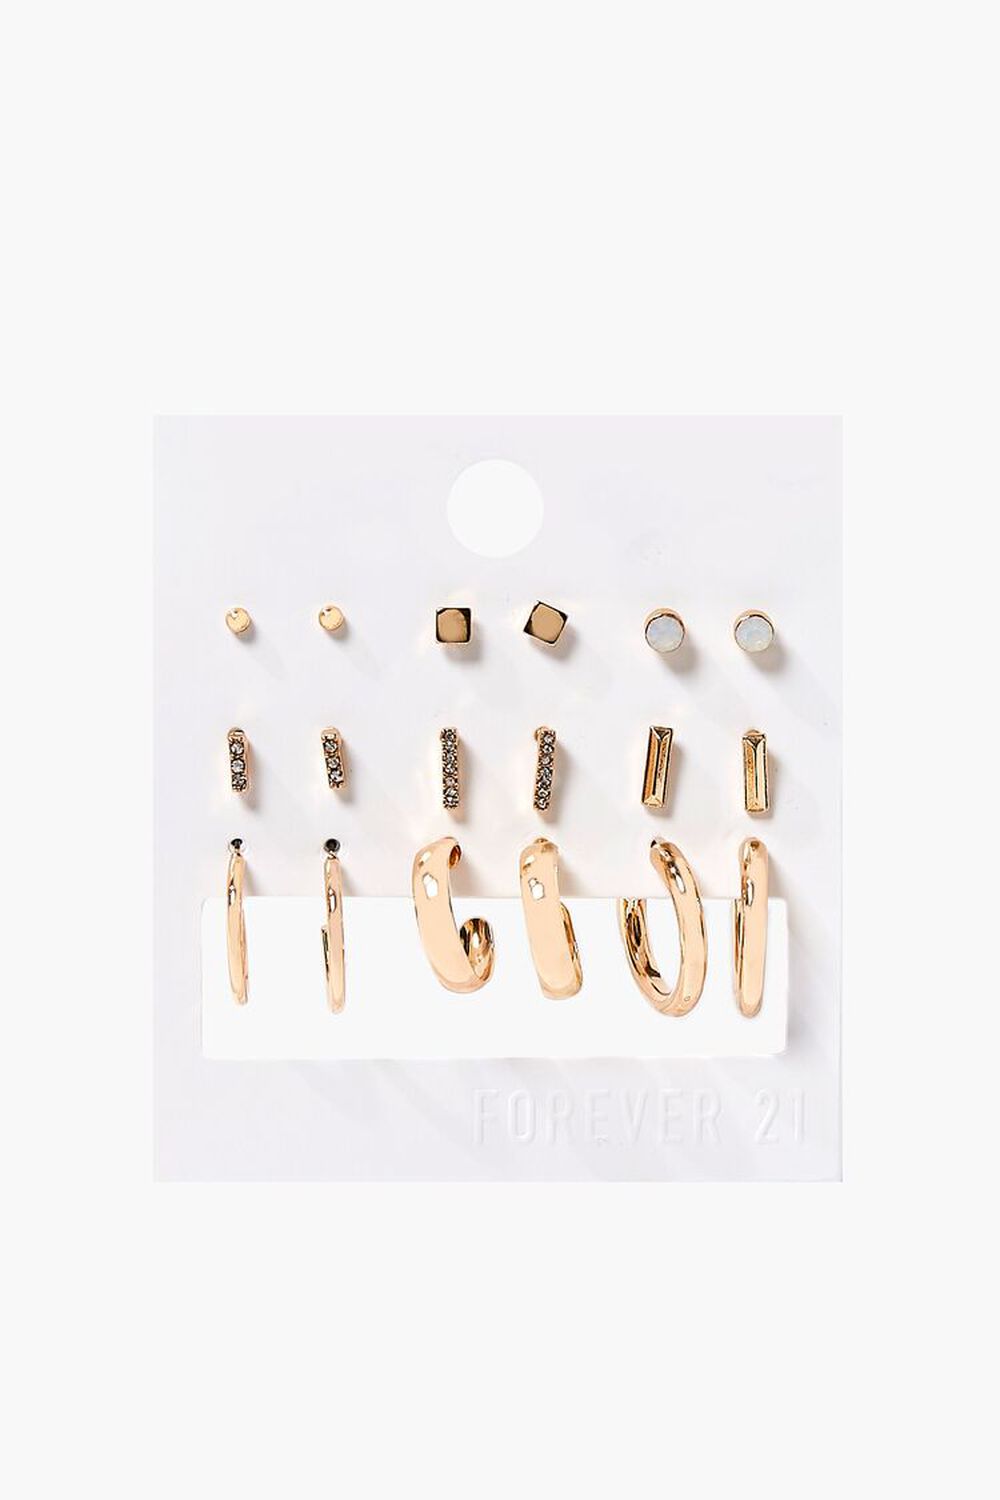 GOLD Hoop & Stud Earring Set, image 1